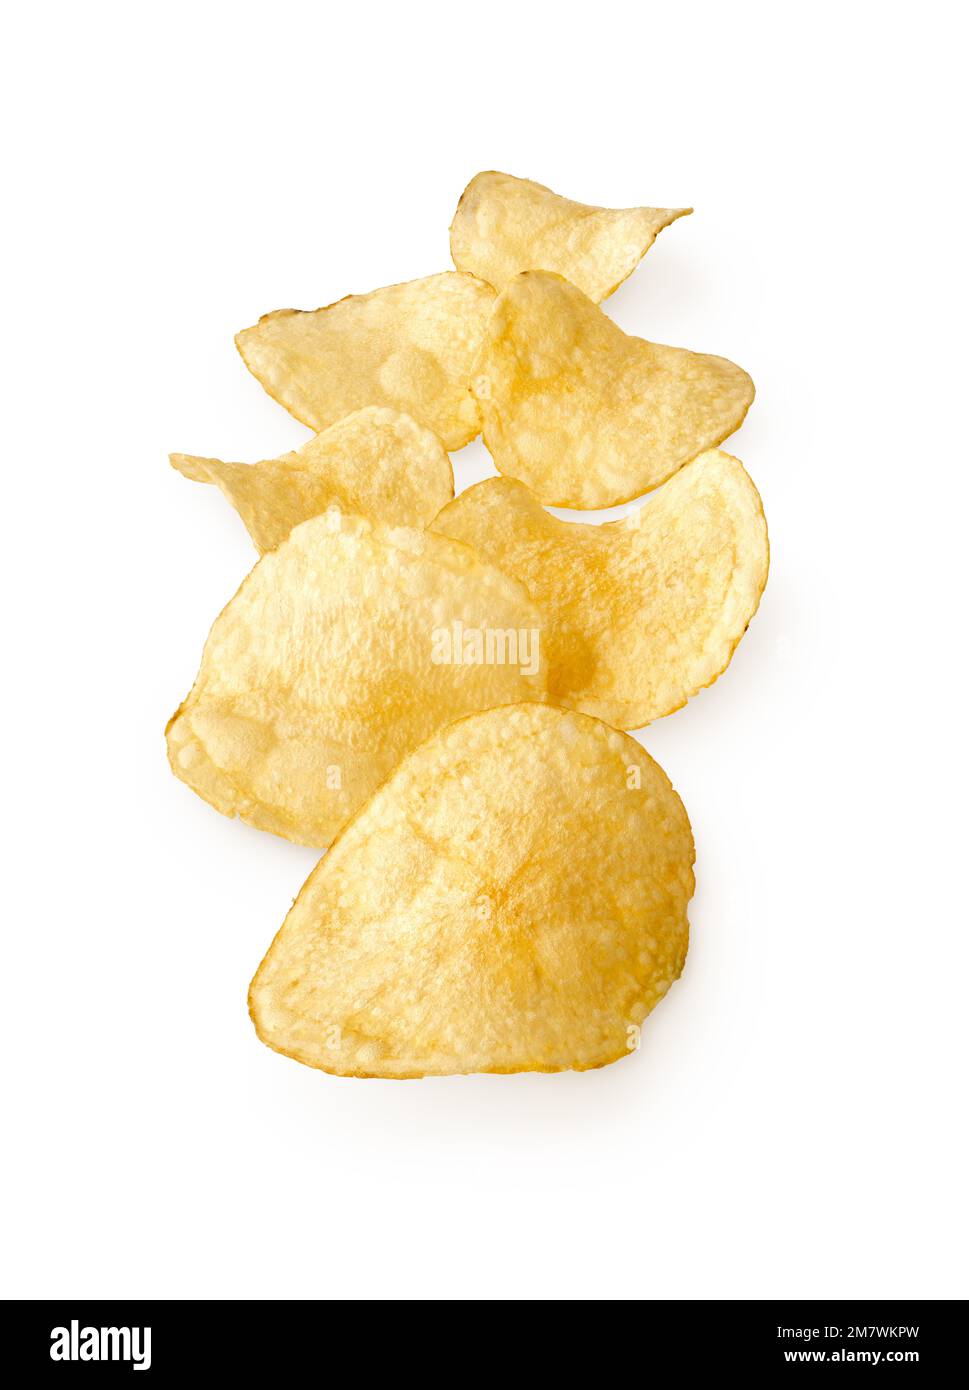 Groupe de chips de pommes de terre naturelles rondes, isolées sur fond blanc Banque D'Images